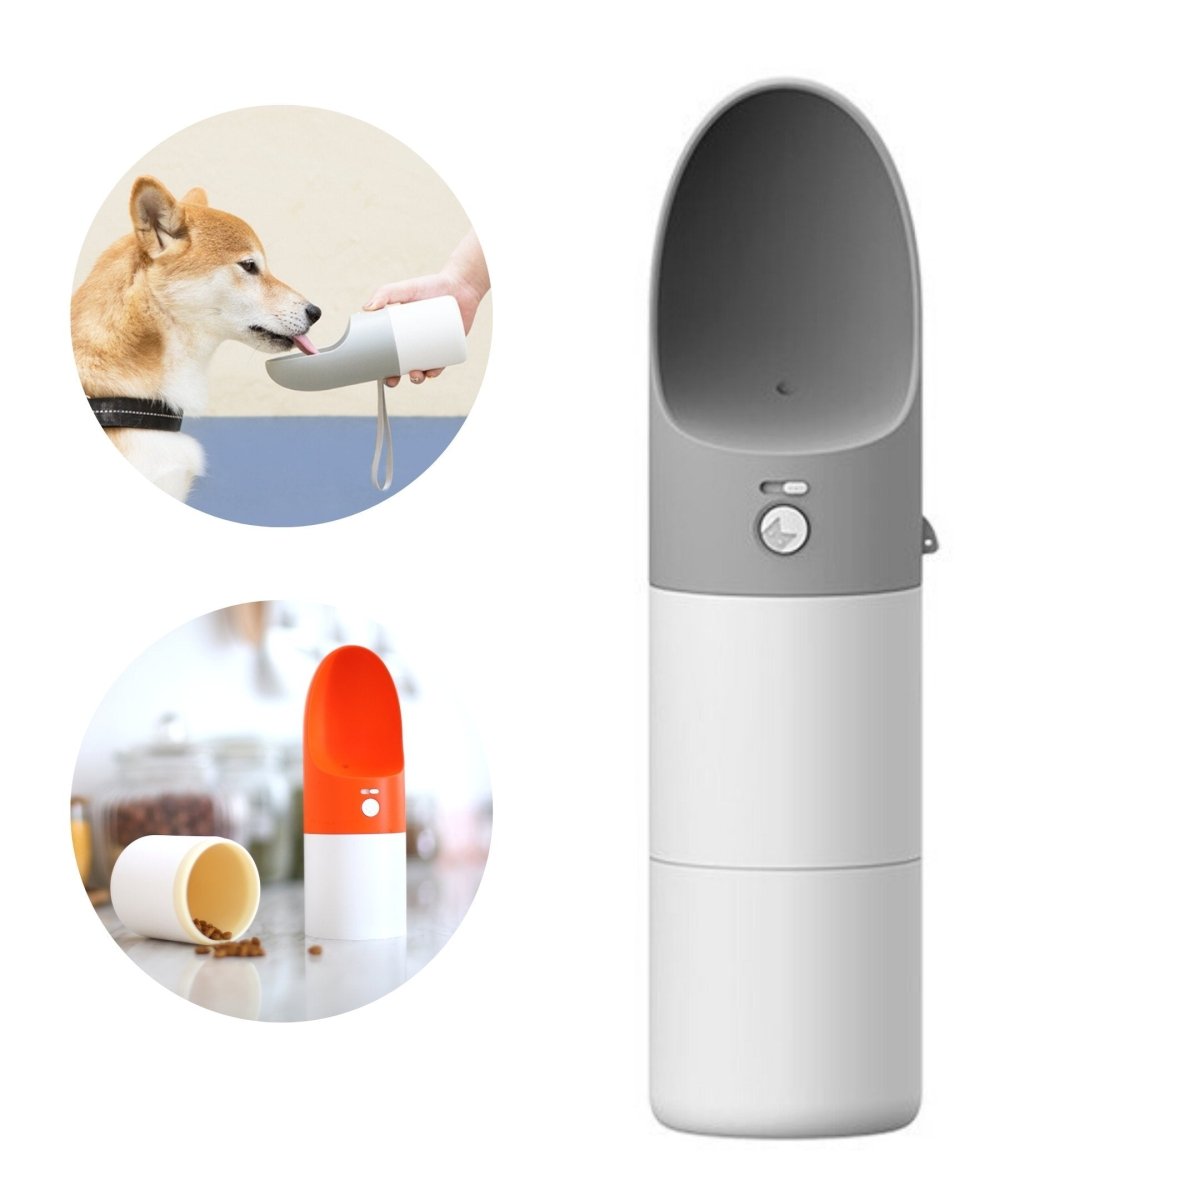 Instachew Rover Pet Travel Bottle, Dog water bottle - Taplike